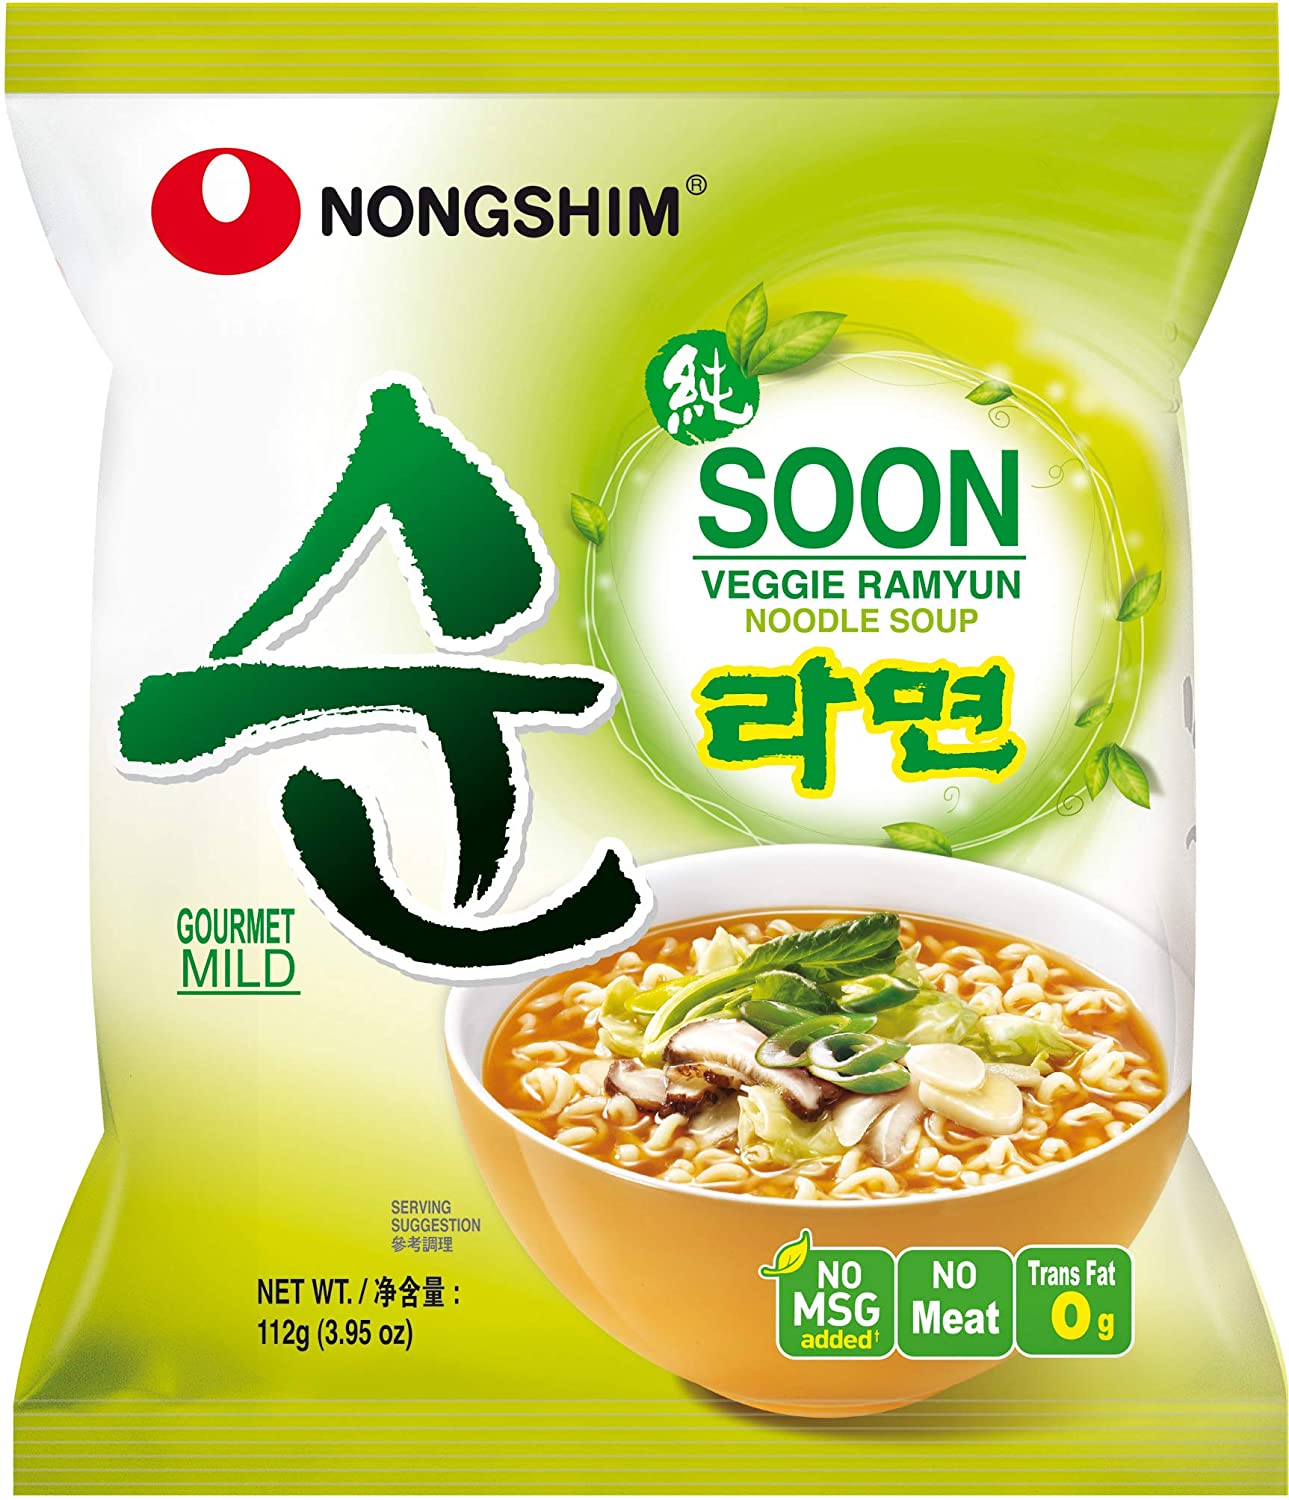 Nongshim Vegan Shin Noodle